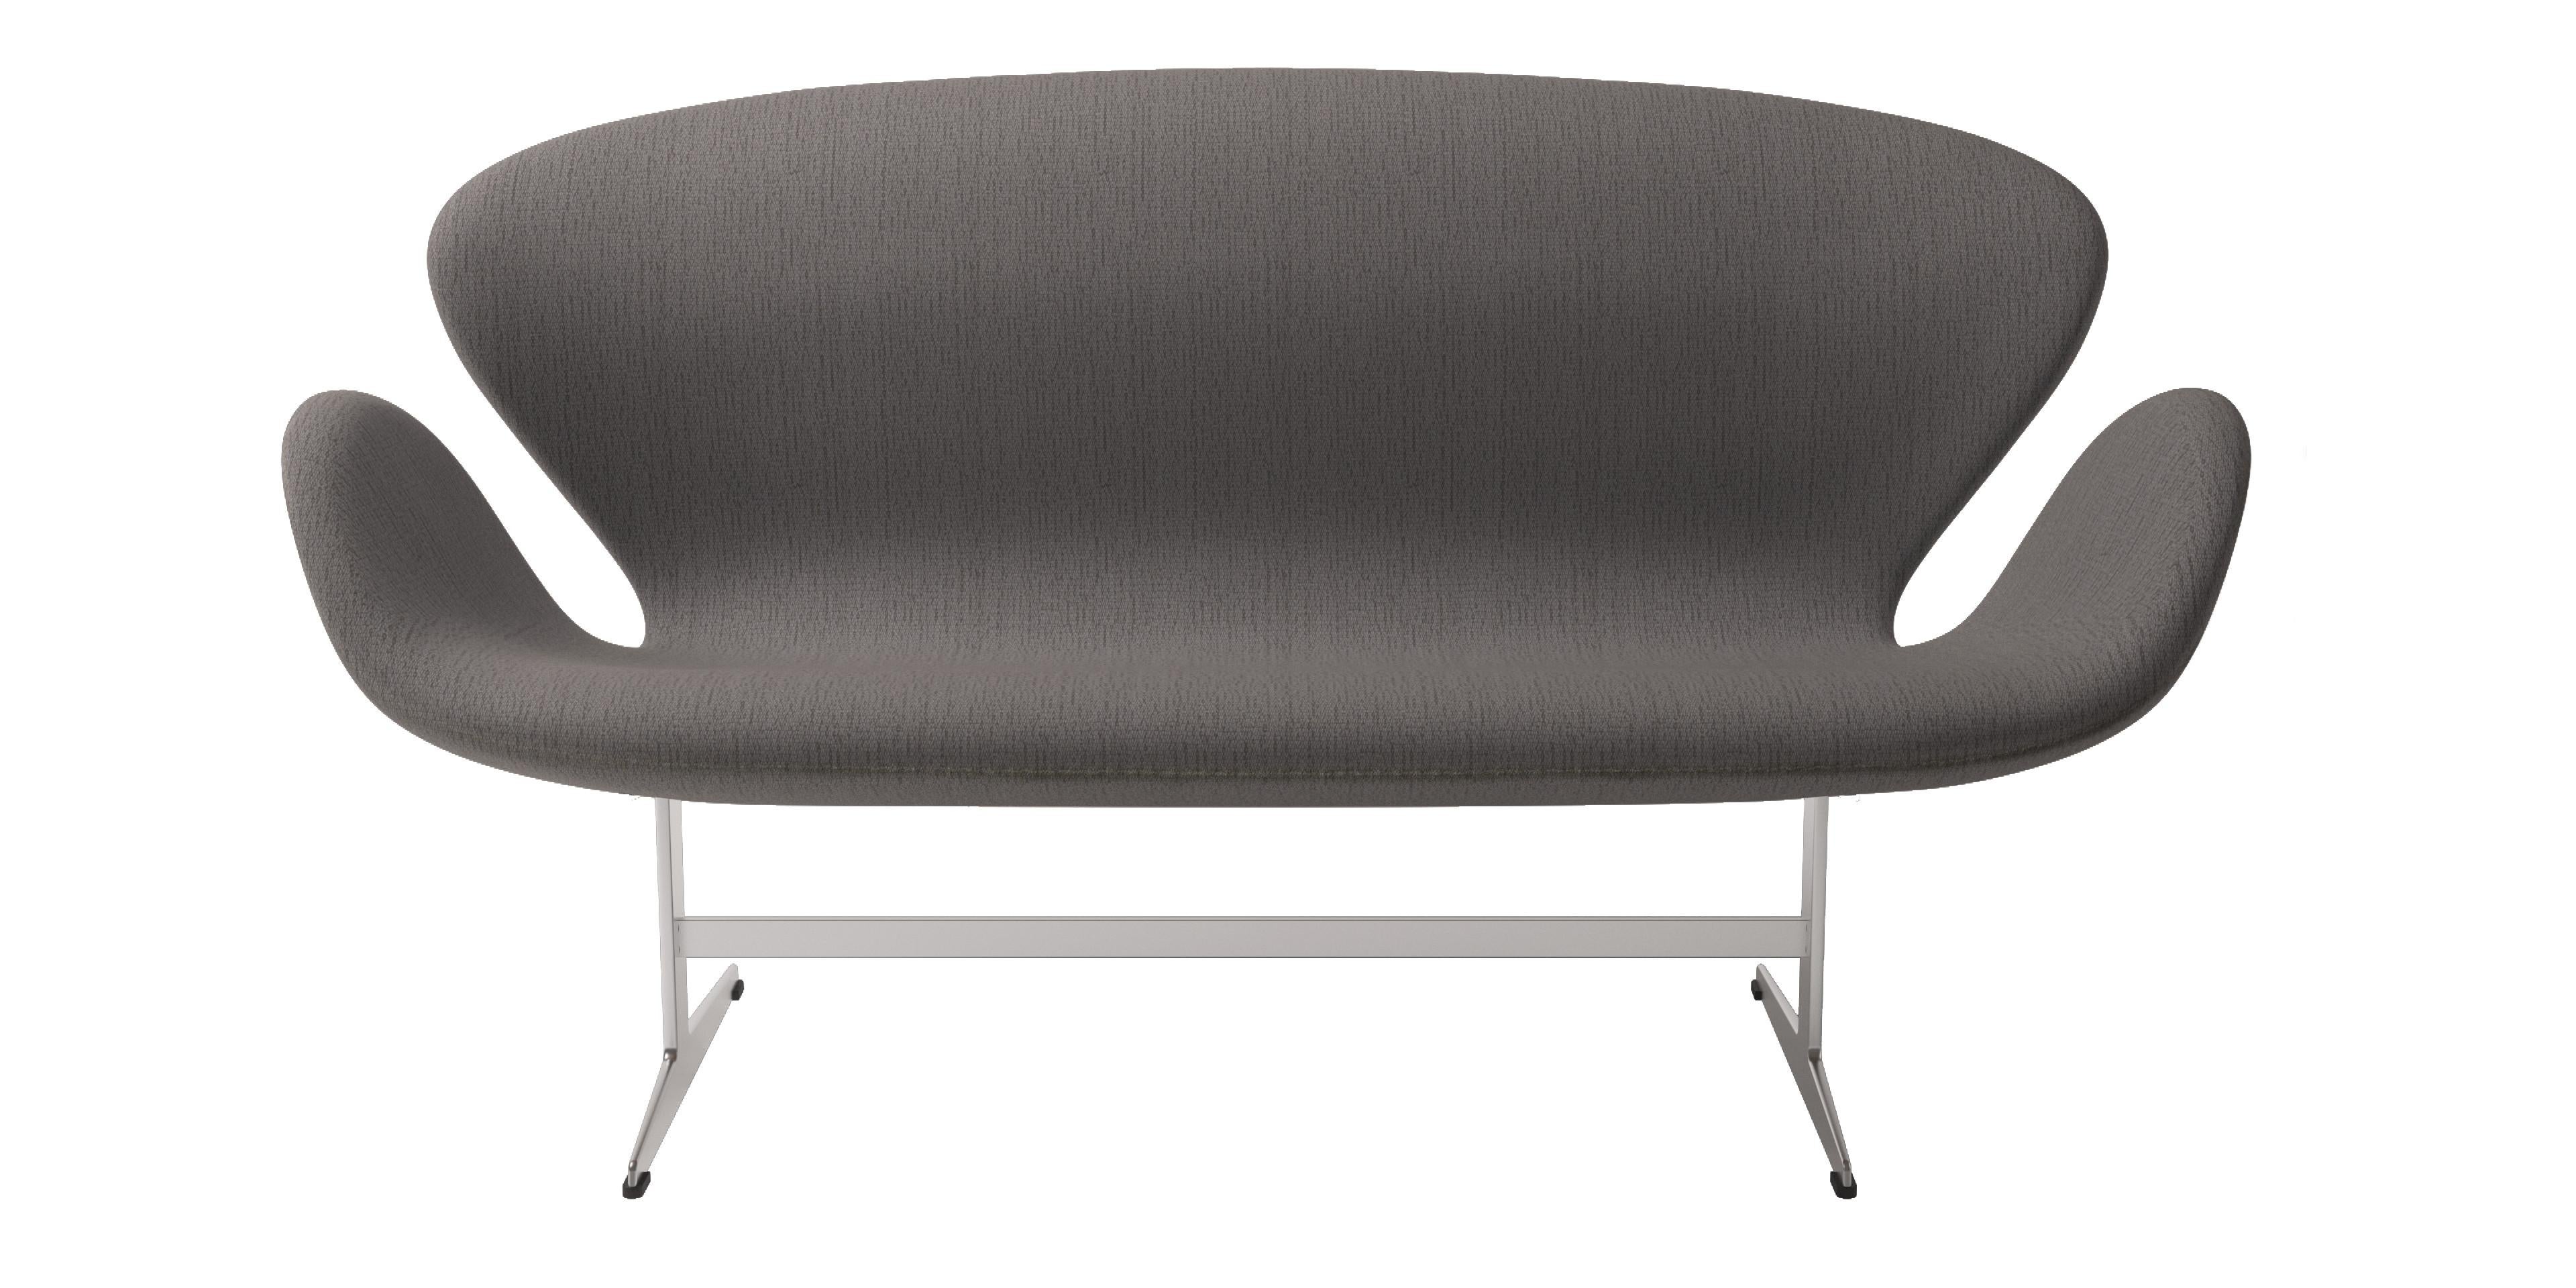 Arne Jacobsen 'Swan' Sofa for Fritz Hansen in Christianshavn Fabric Upholstery For Sale 9